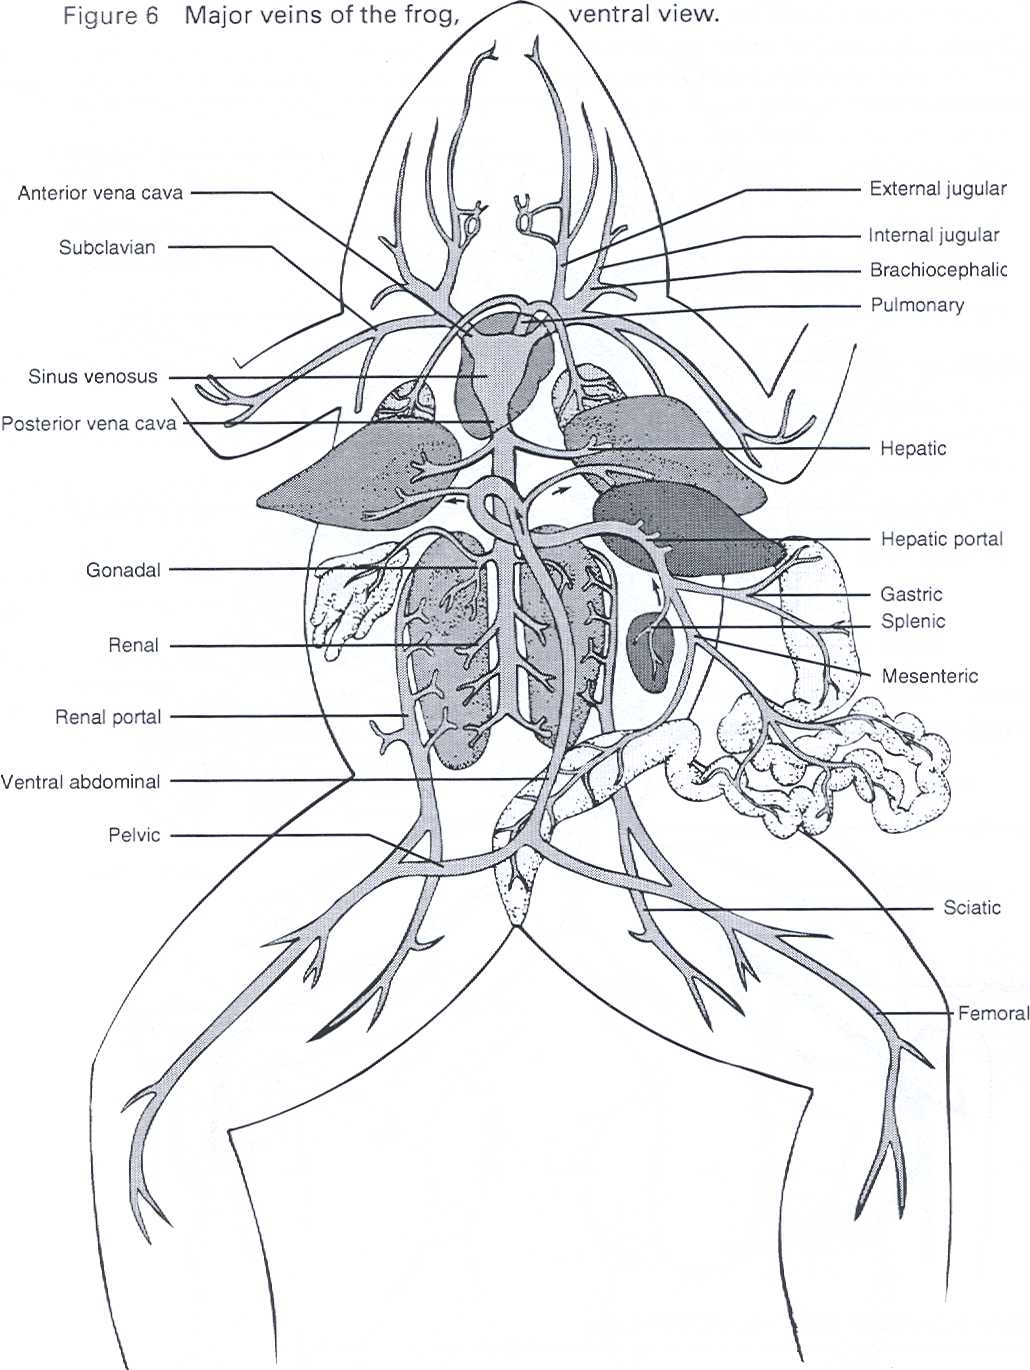 frog-anatomy-worksheets-free-printable-worksheet